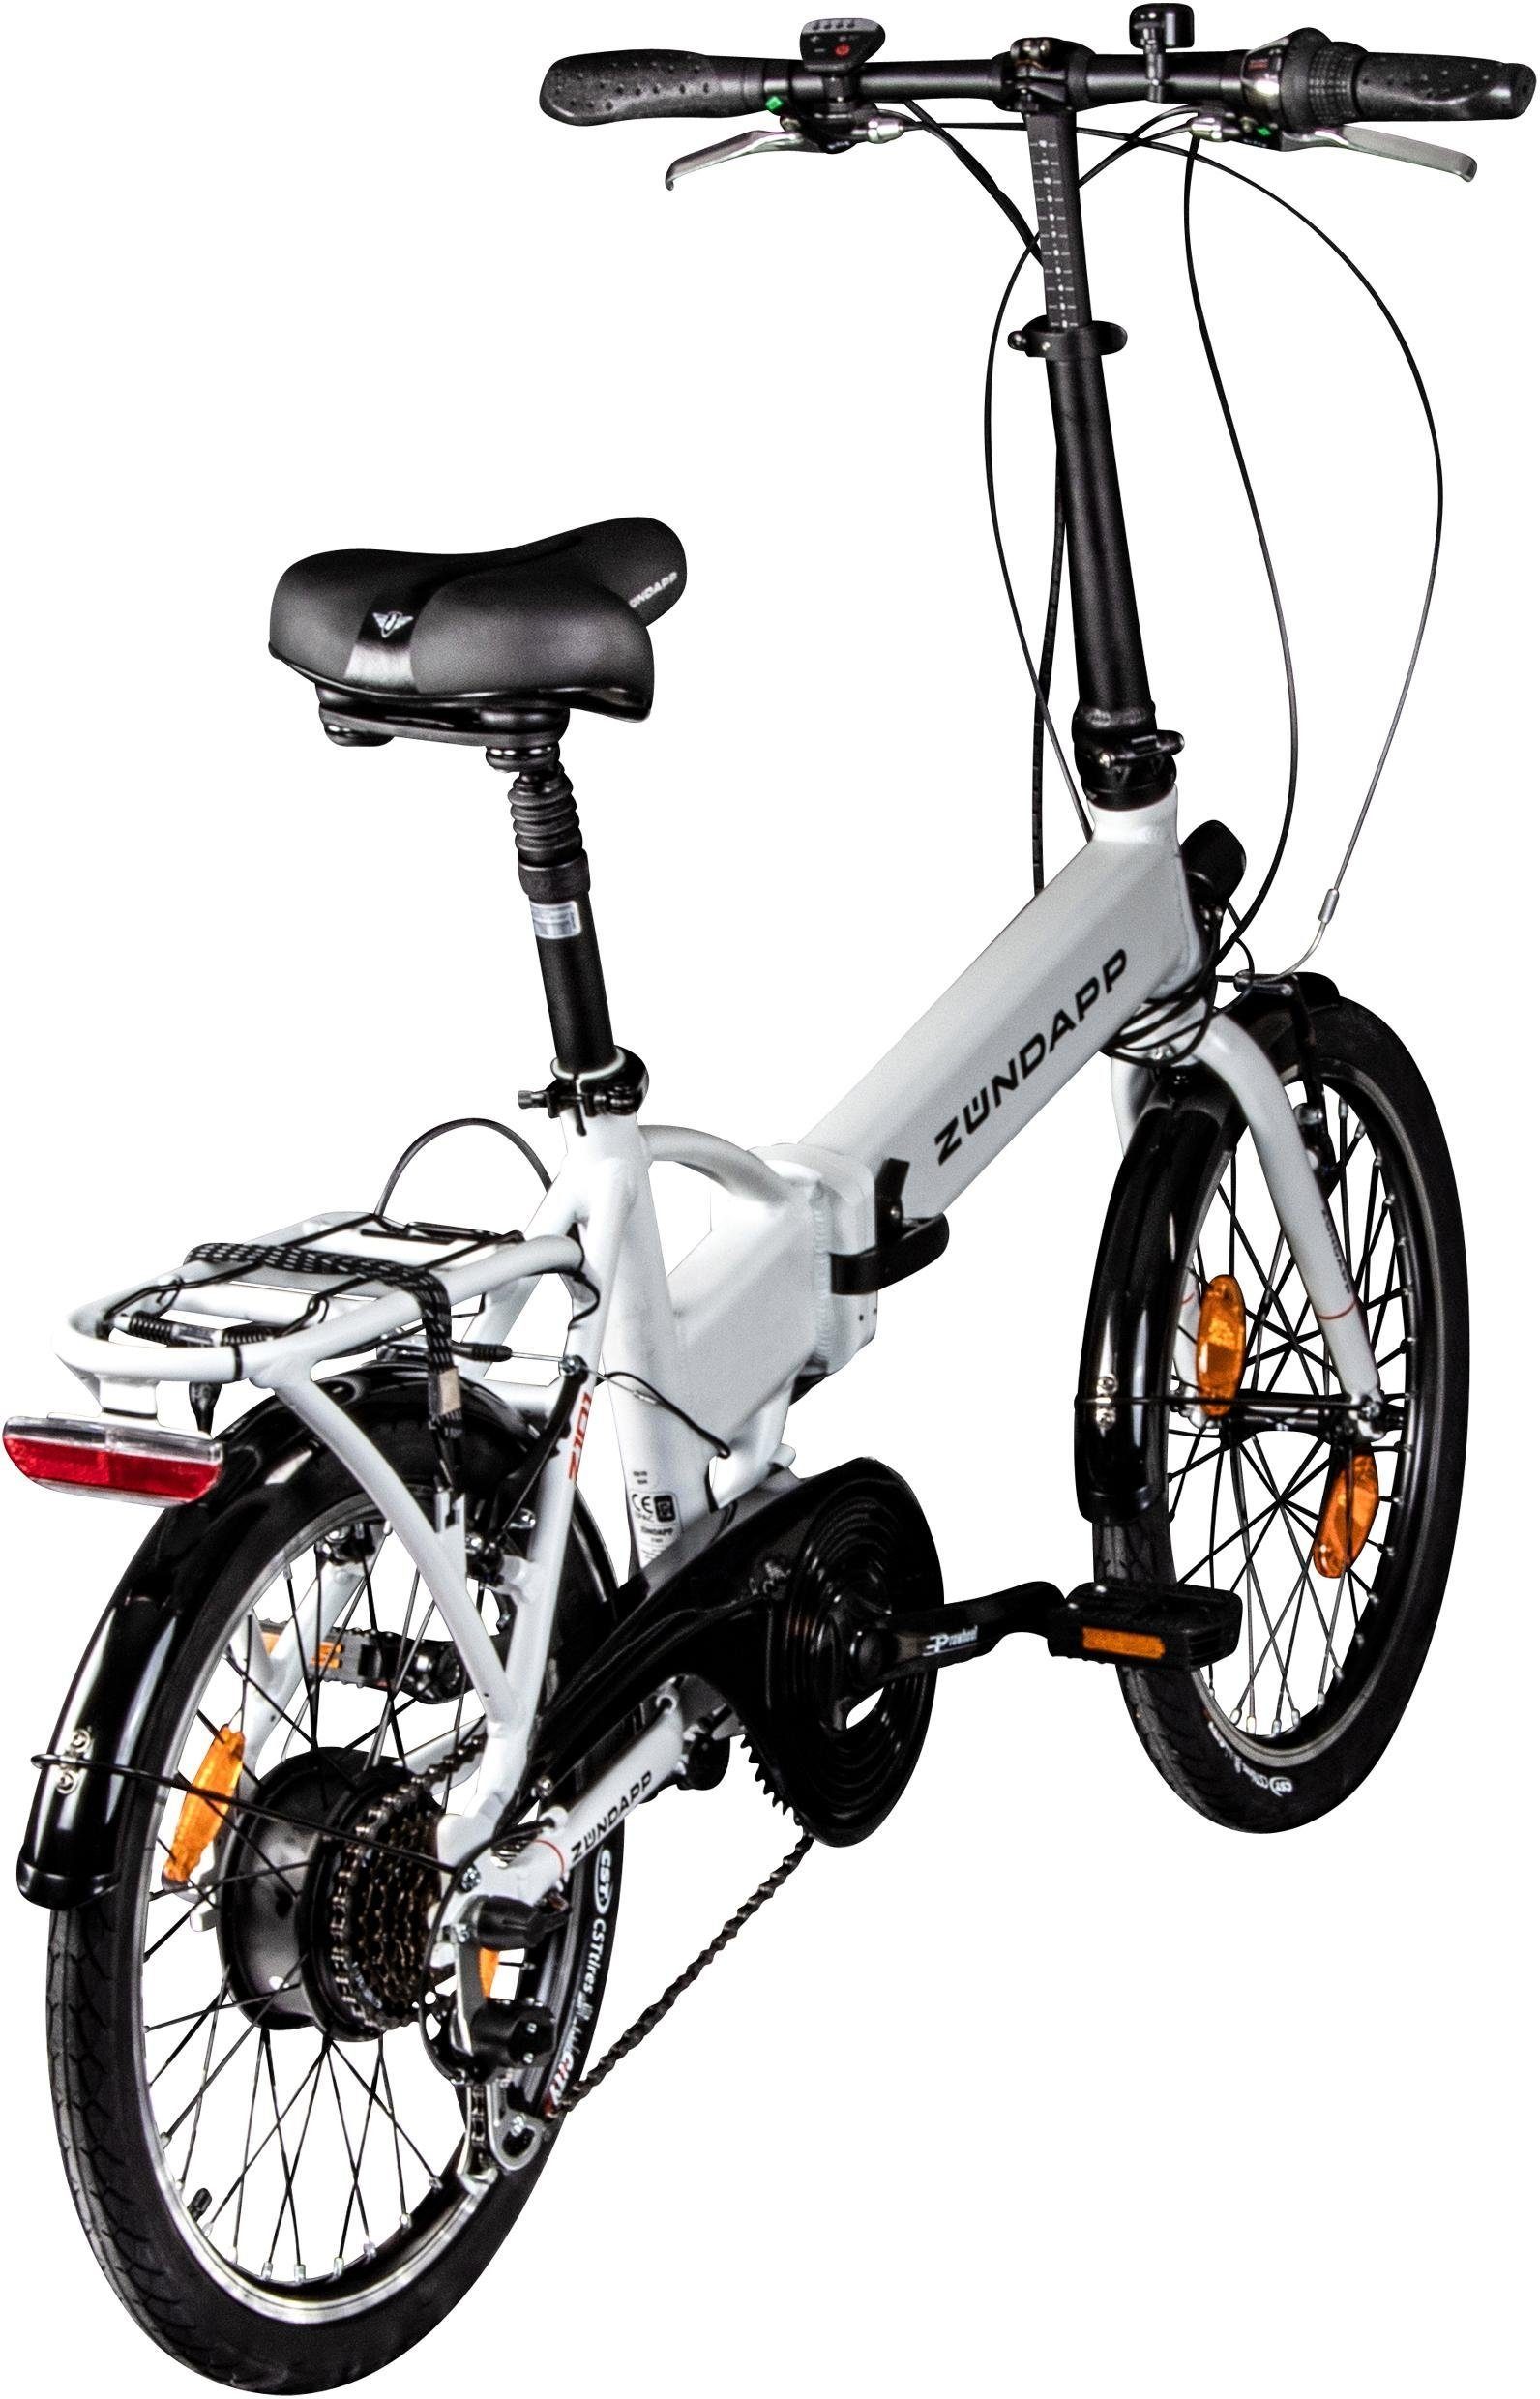 Z101, 6 Shimano E-Bike Schaltwerk, Heckmotor, 270 Akku Wh Tourney Zündapp Gang Kettenschaltung,